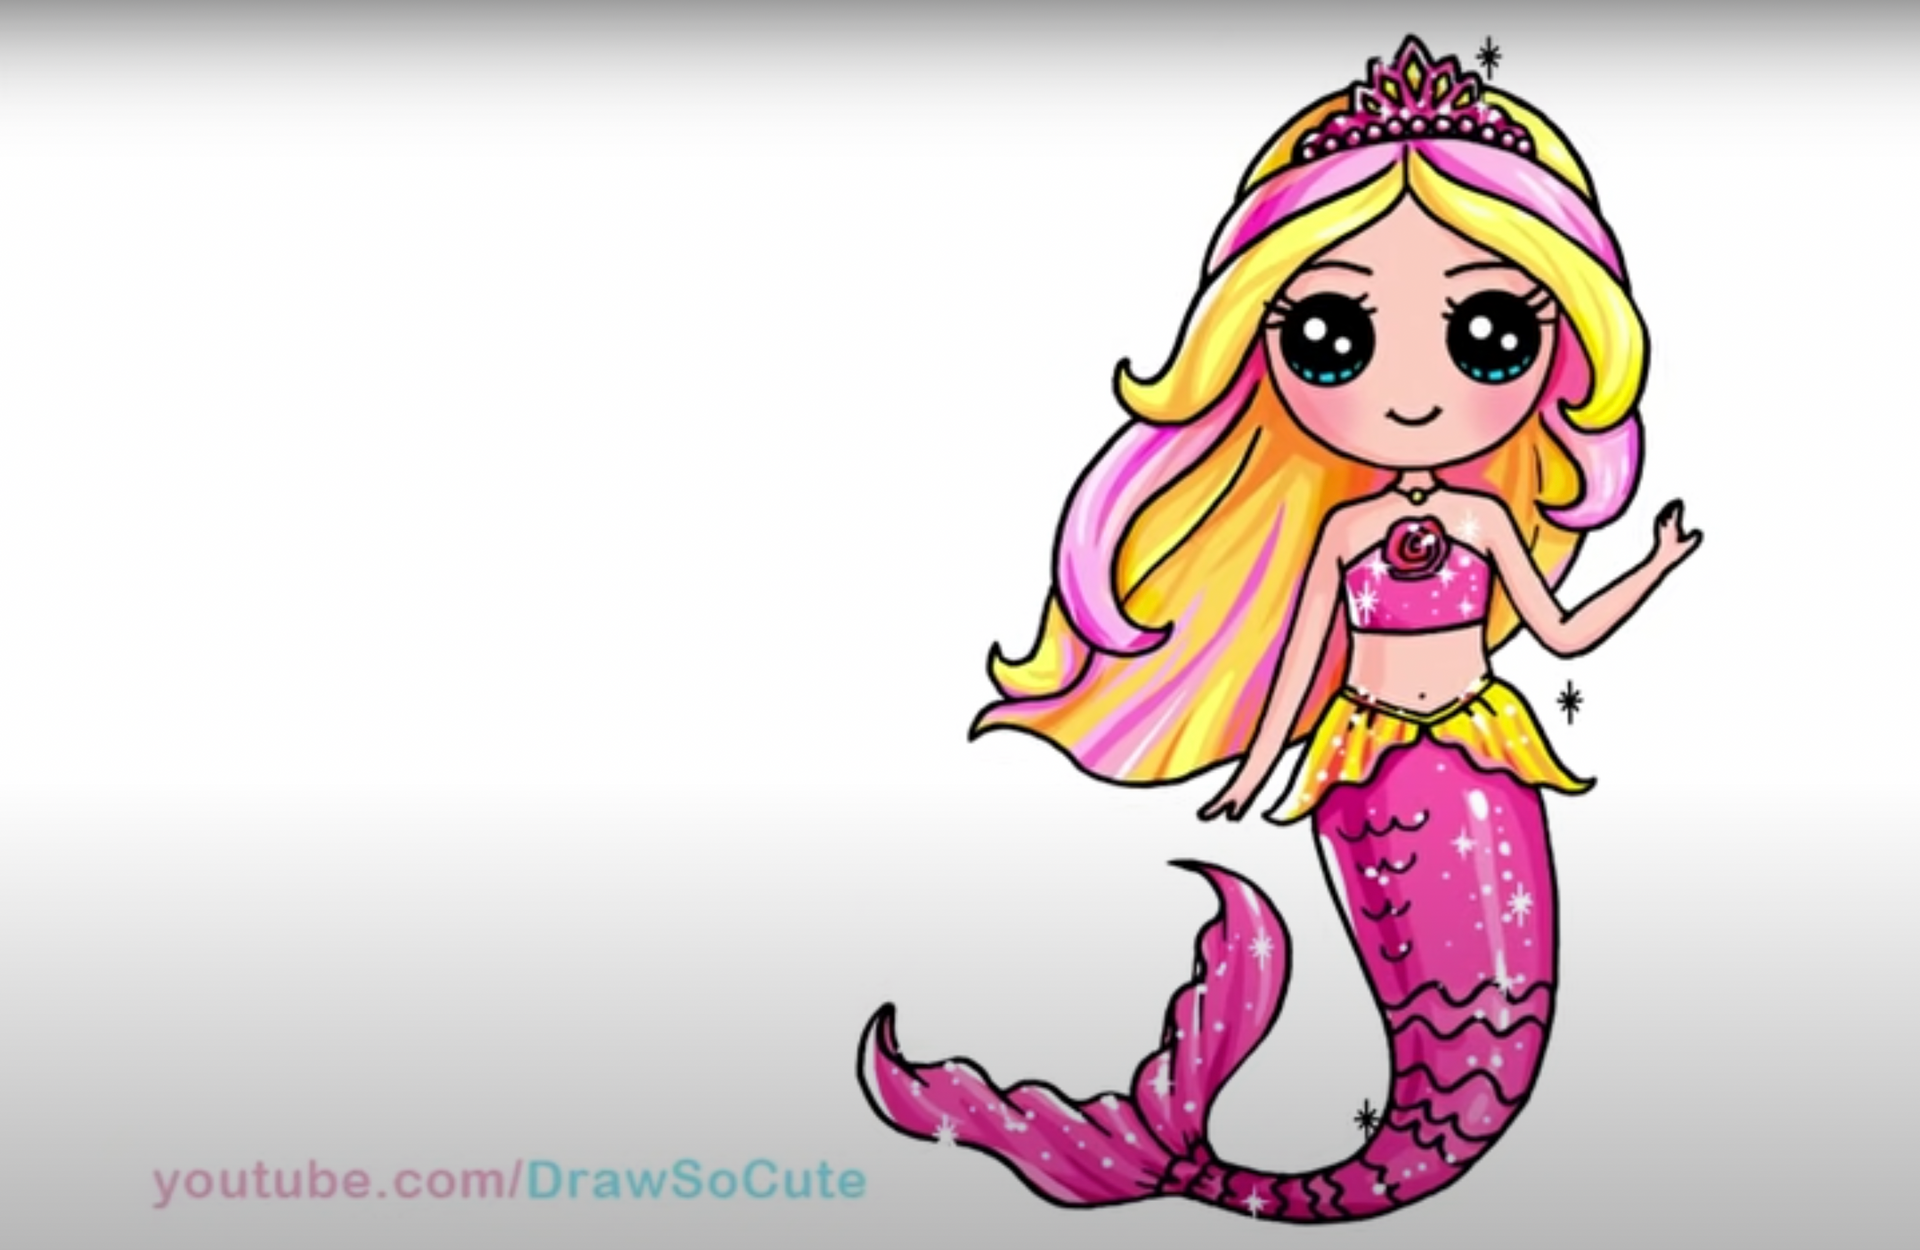 Load video: Barbie mermaid